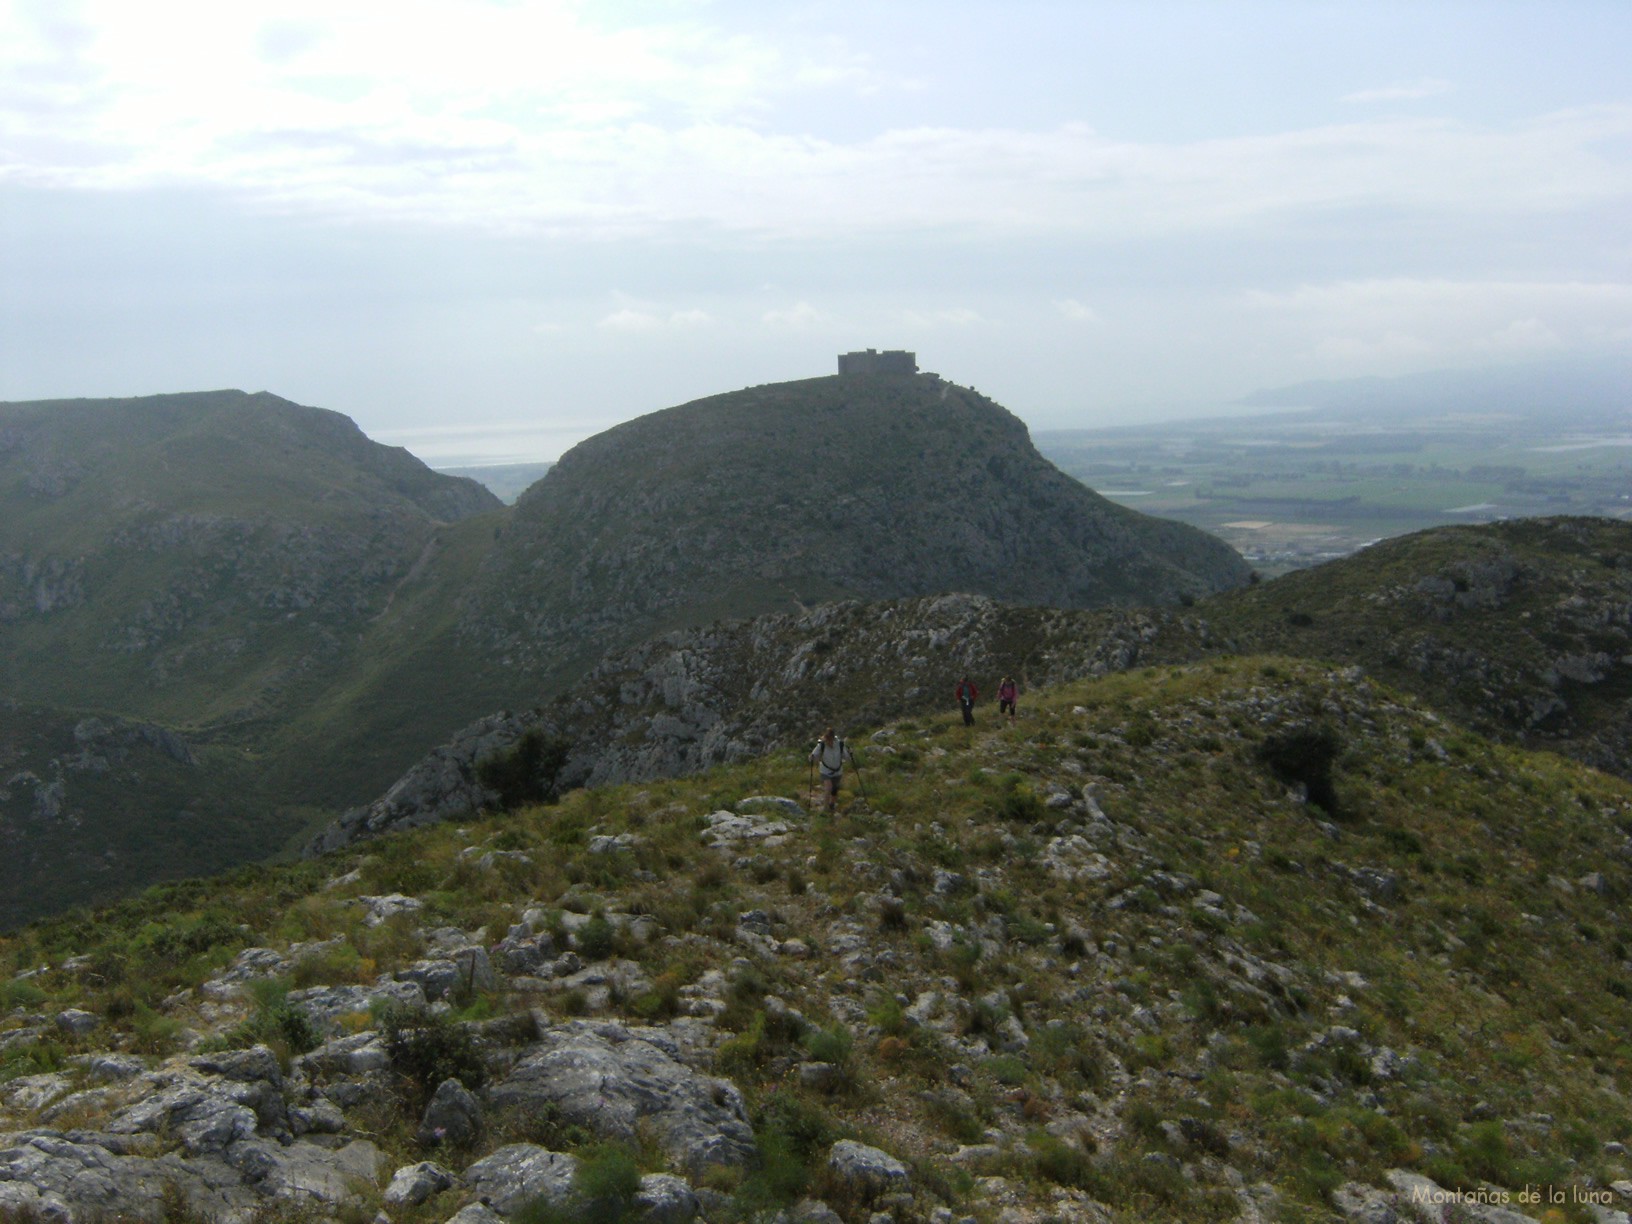 Llegando a la cima del Puig Rodó, detrás el Castell de Montgrí